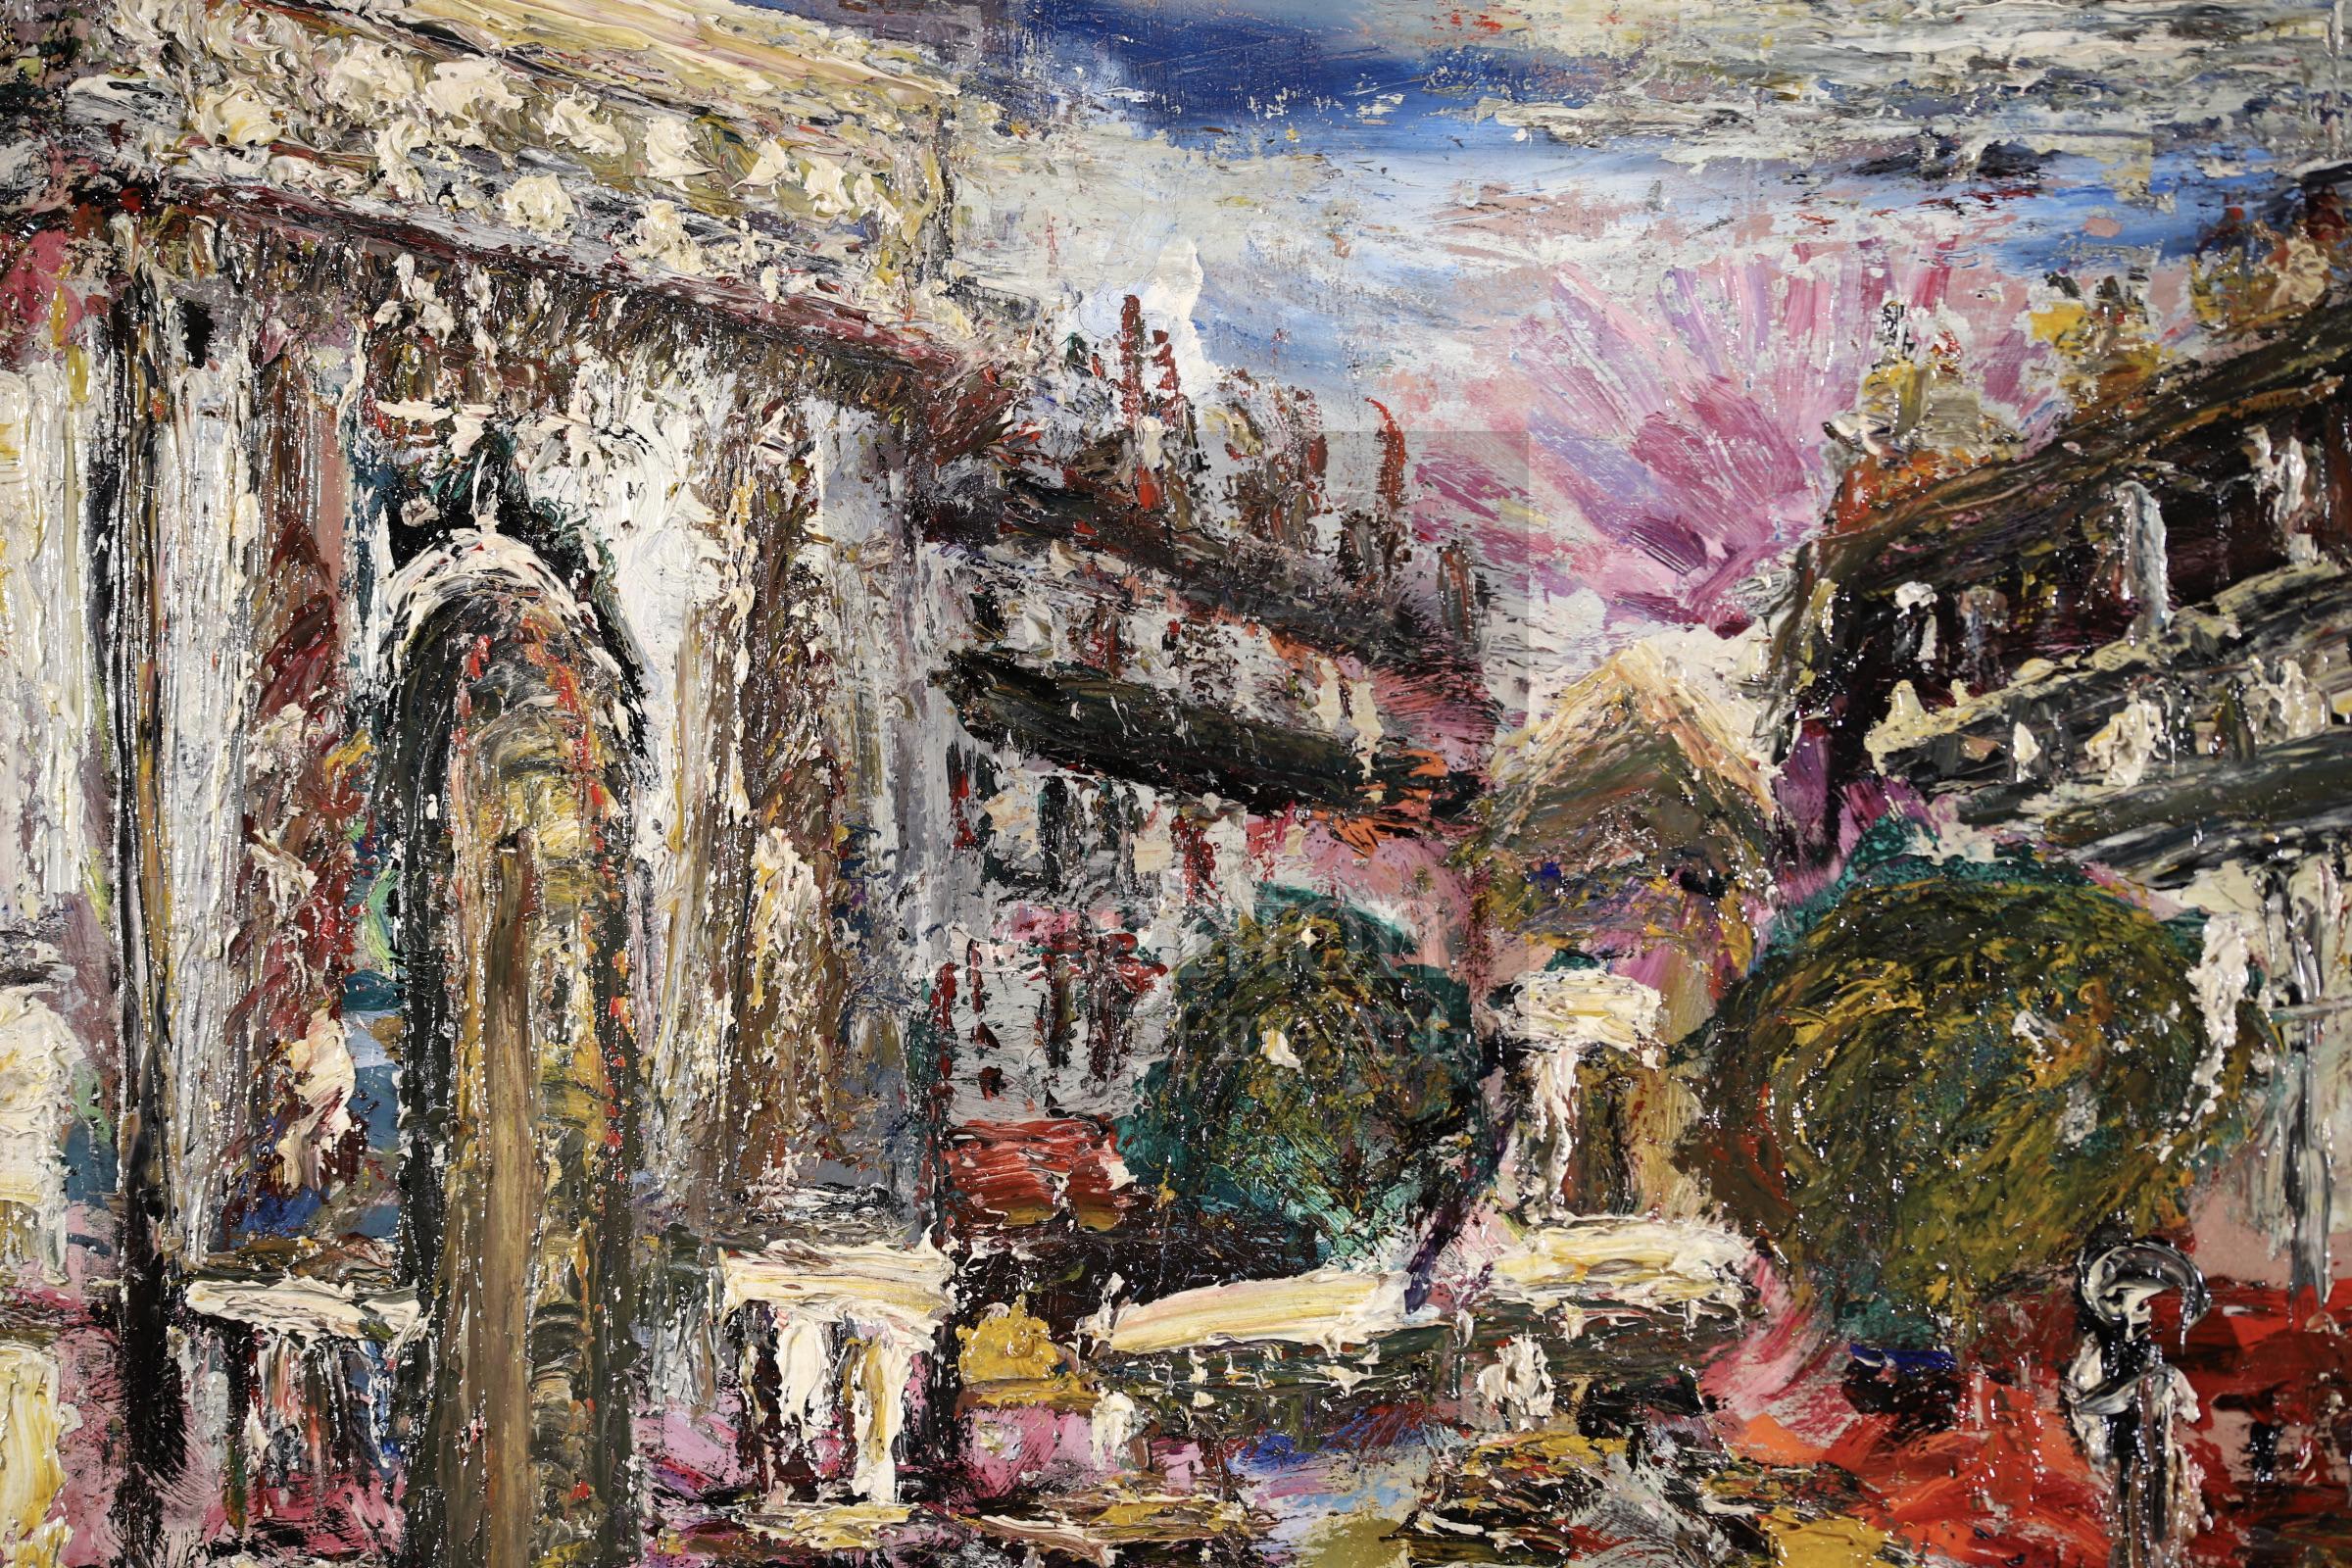 Huile sur toile originale signée figures dans un paysage circa 1930 par le peintre post impressionniste français Lucien Genin. L'œuvre est centrée sur la Porte Saint-Denis - un arc de triomphe situé à Paris, en France. La rue est animée par les